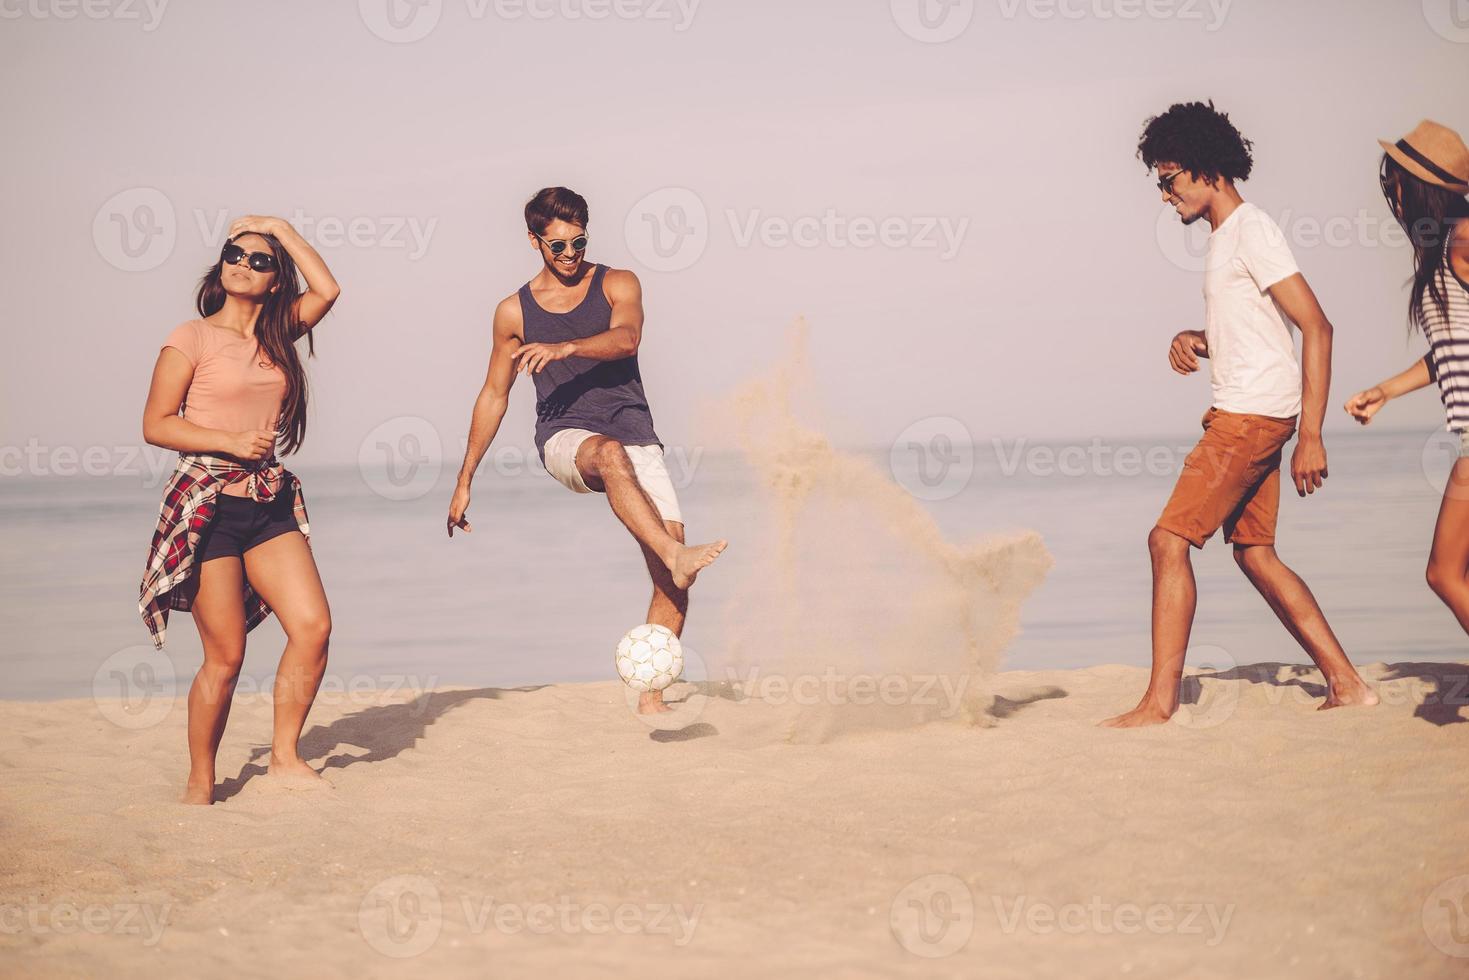 sommerspaß mit freunden. gruppe fröhlicher junger leute, die mit fußball am strand mit meer im hintergrund spielen foto